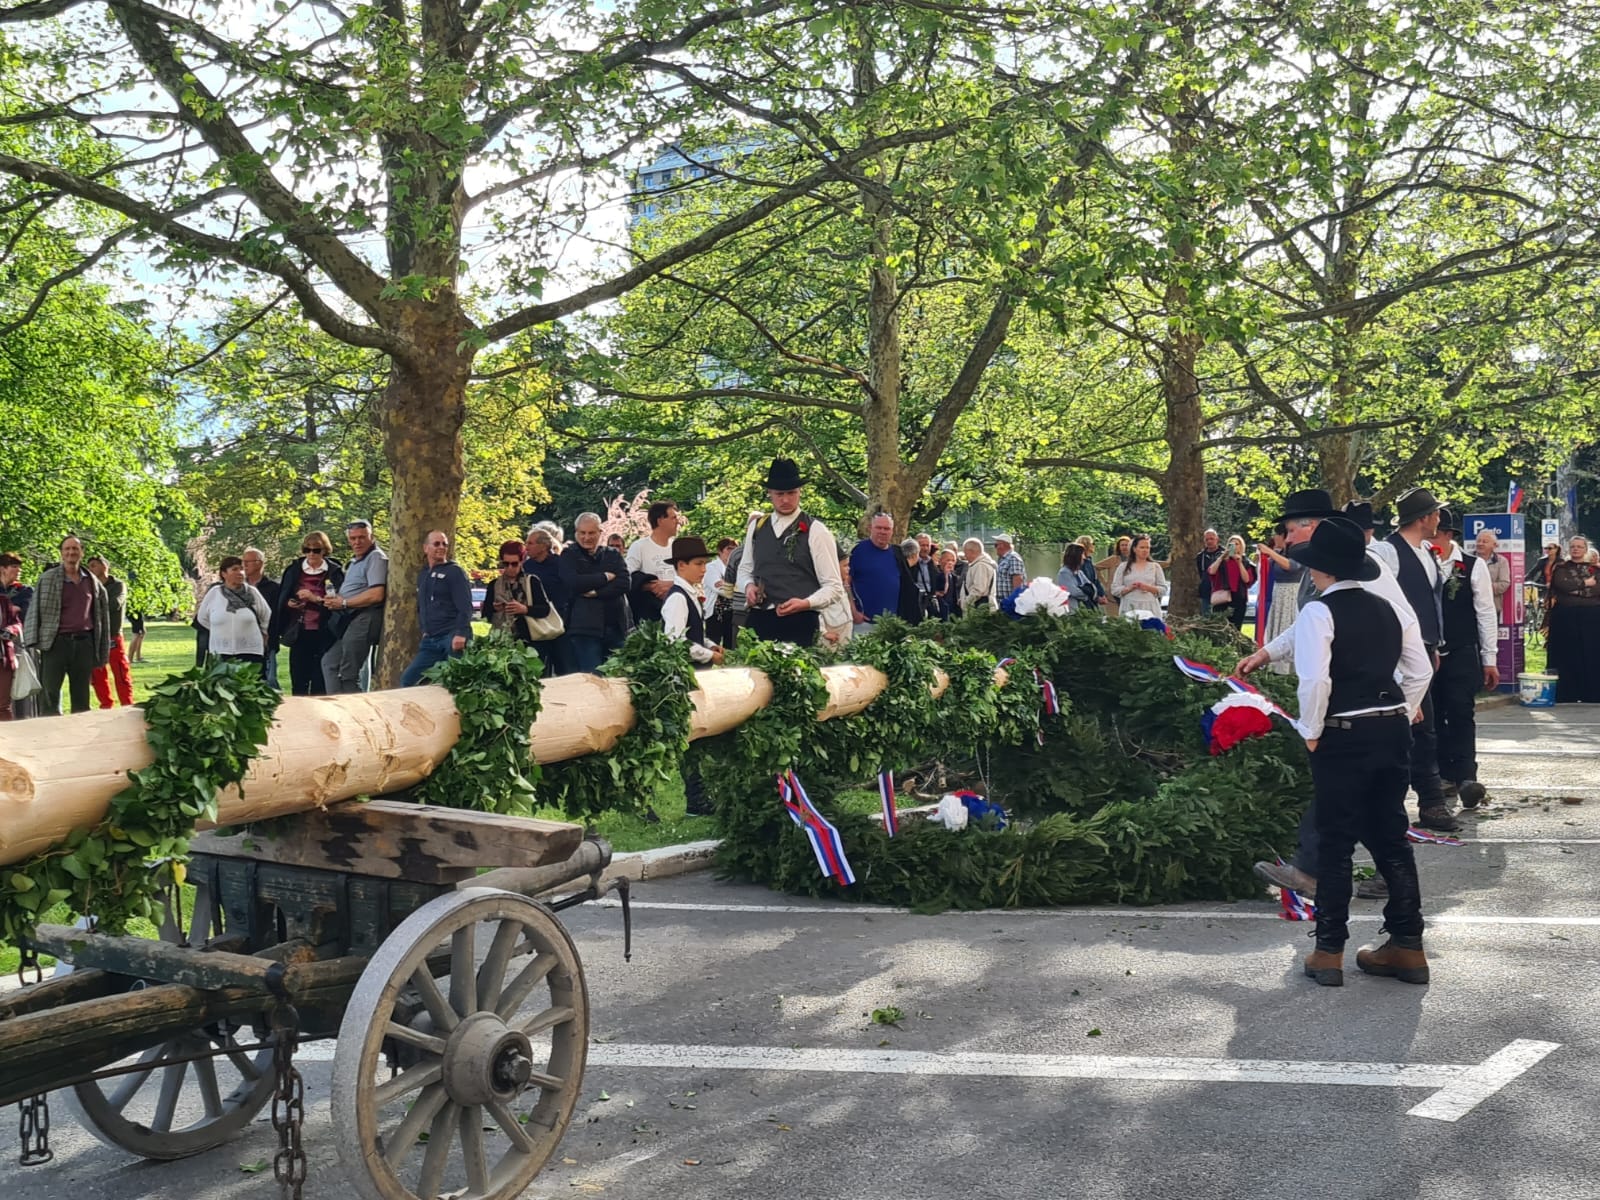 L'albero del Mlaj arriva in carrozza a Nova Gorica, la tradizione di maggio